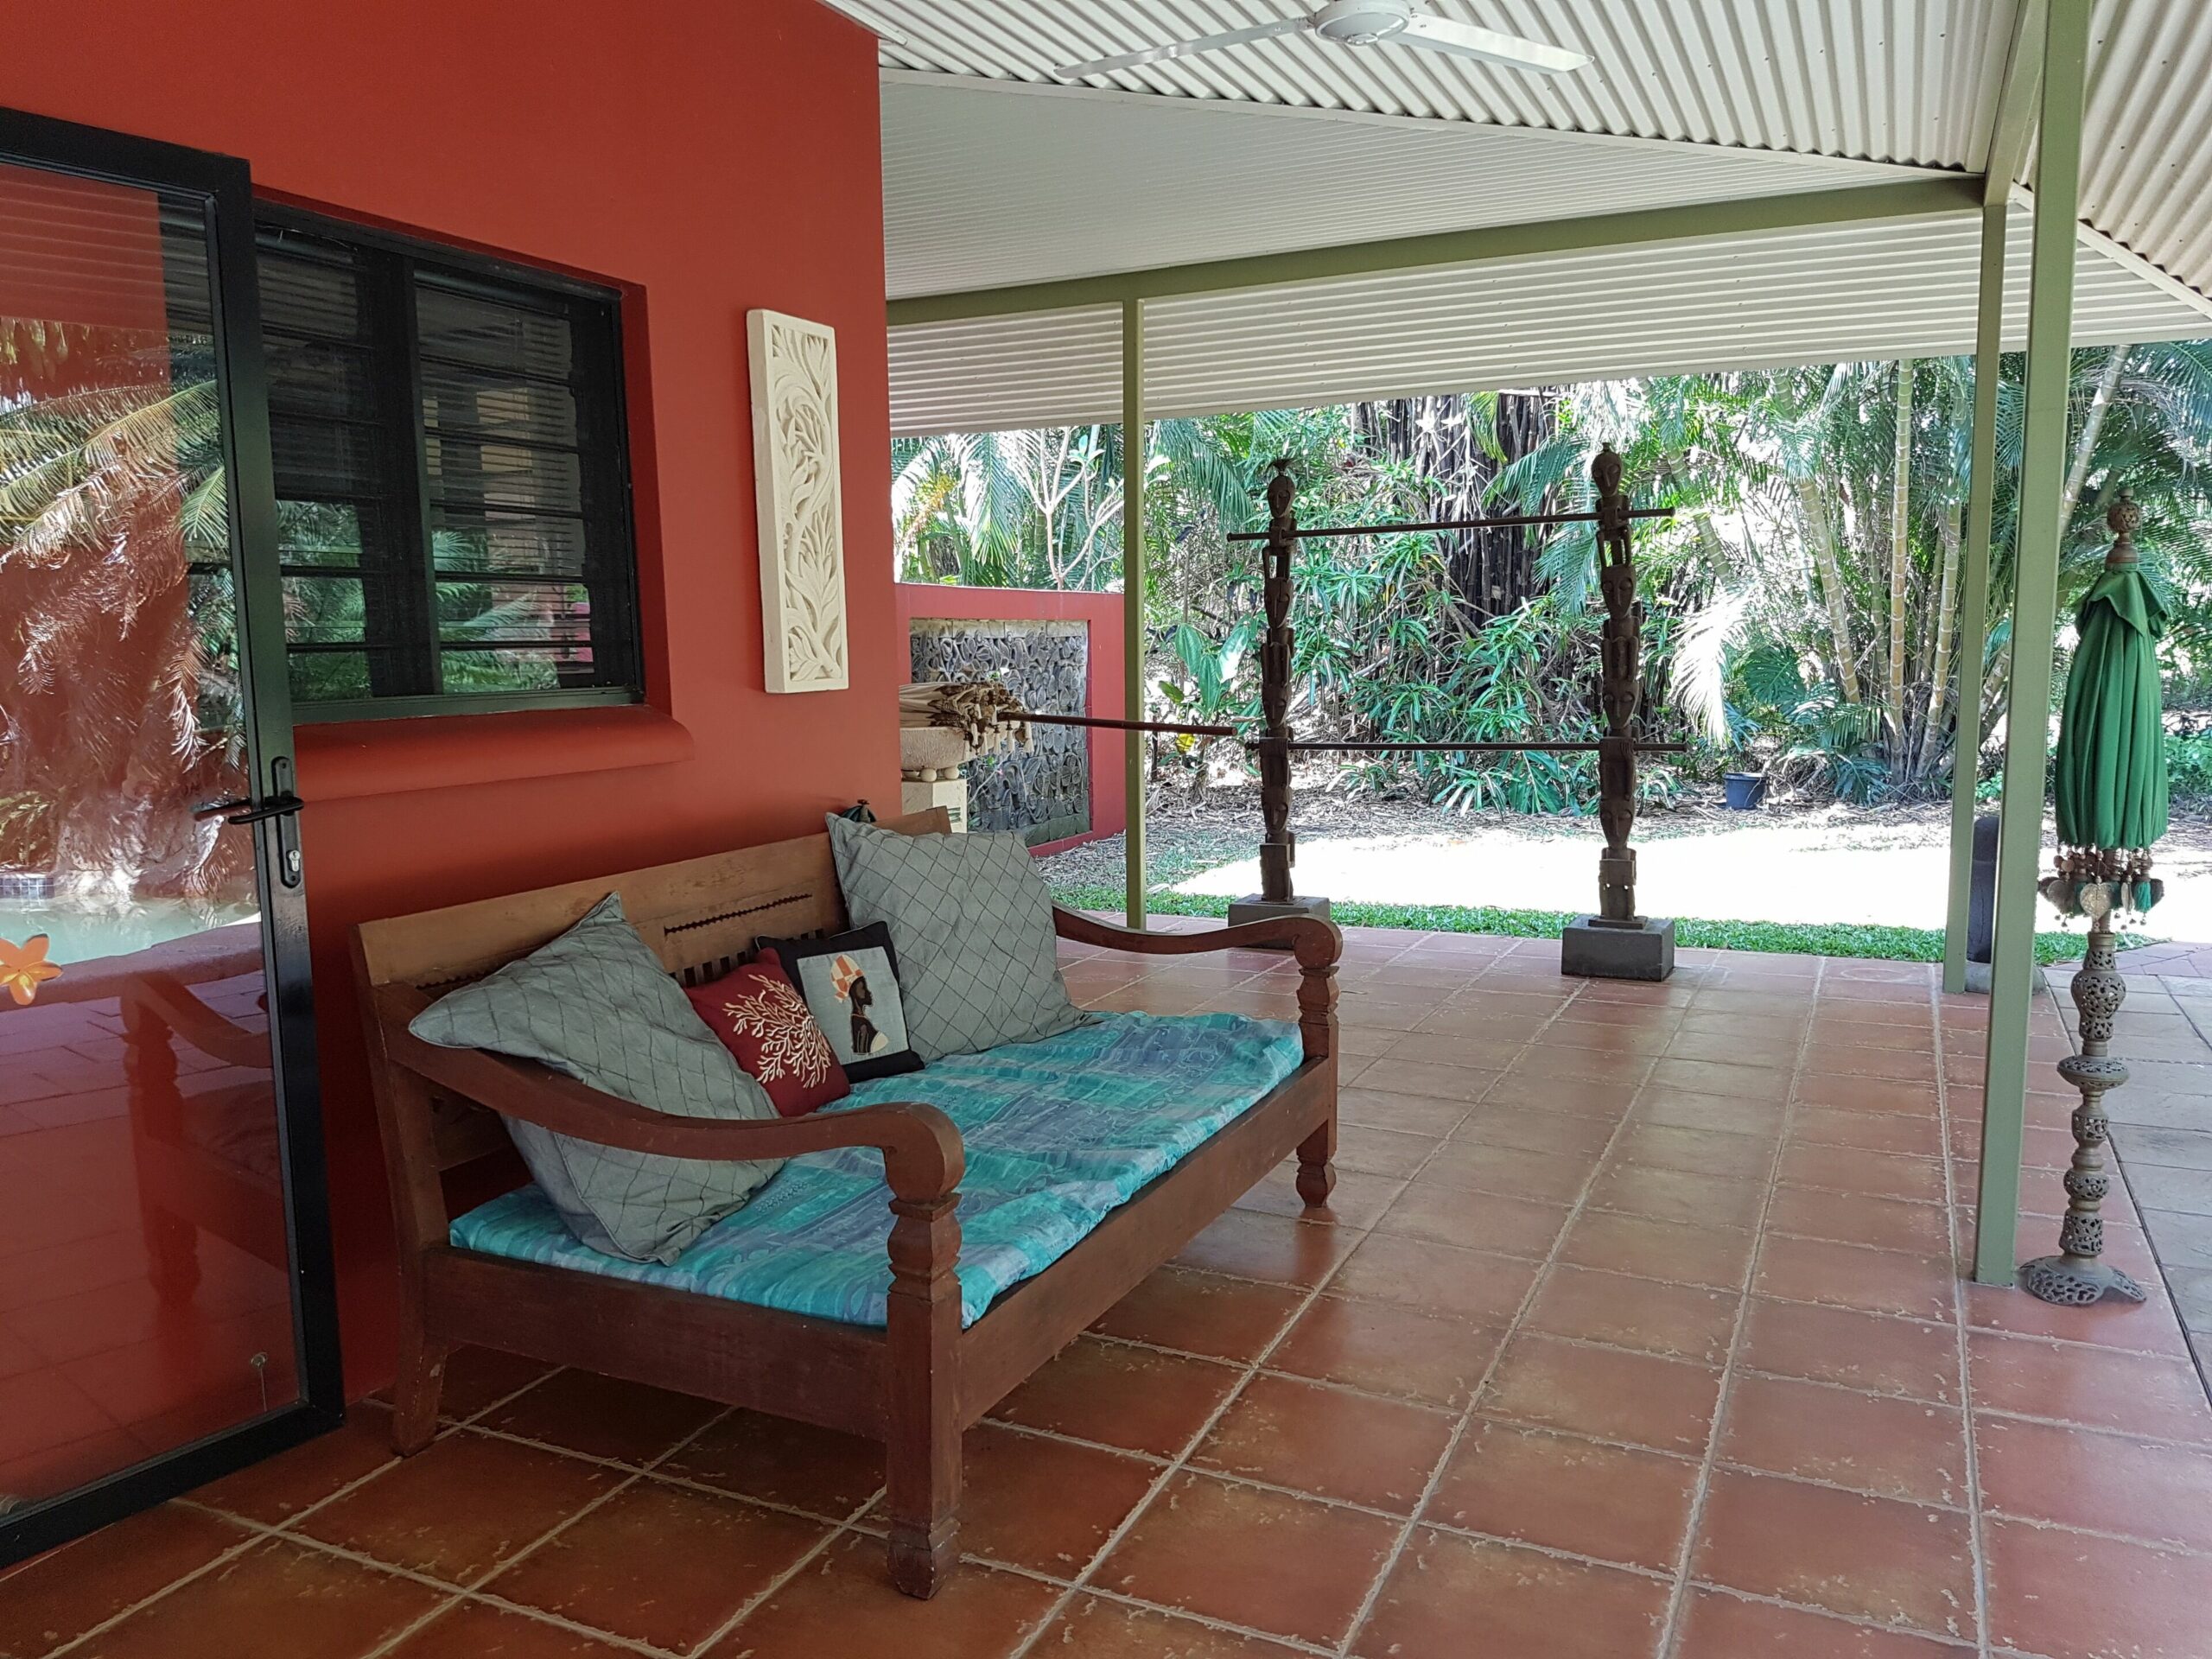 KL Villa is a Unique Exclusive Tropical Hideaway Paradise